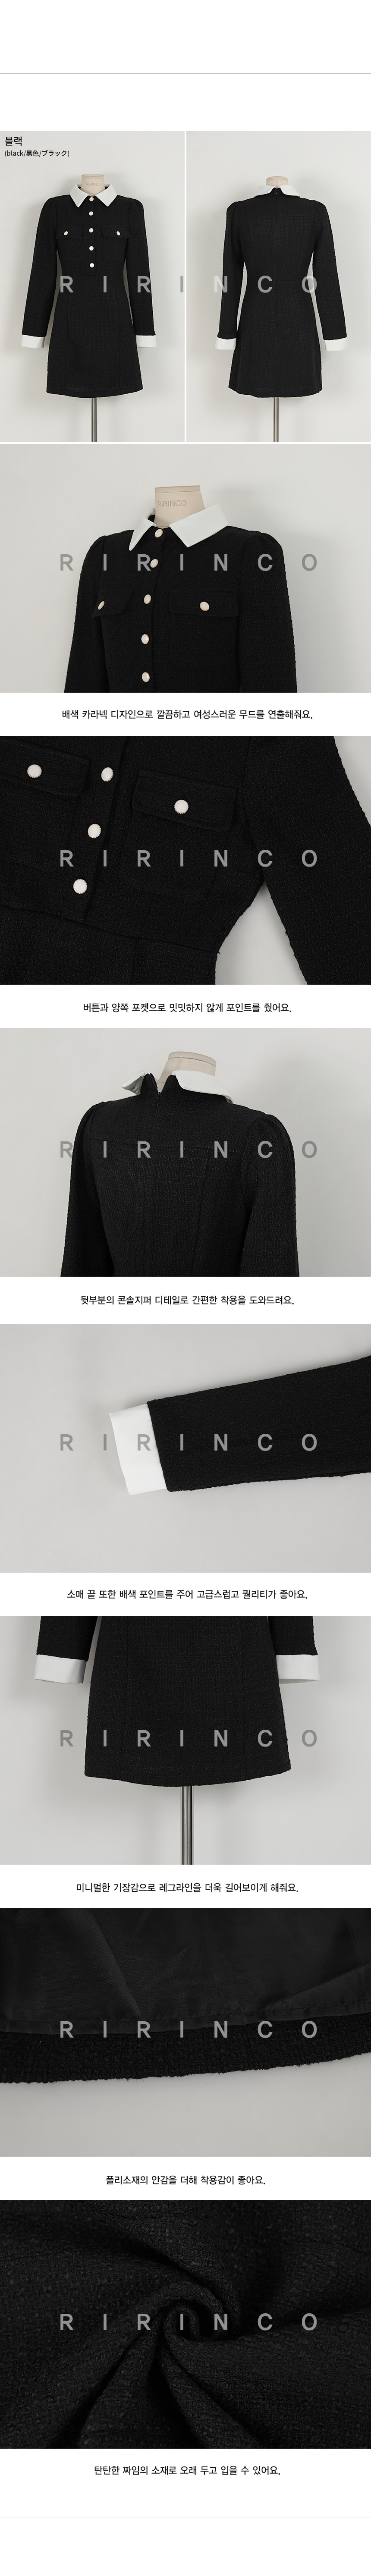 RIRINCO ツイード配色ポケットカラーネックワンピース